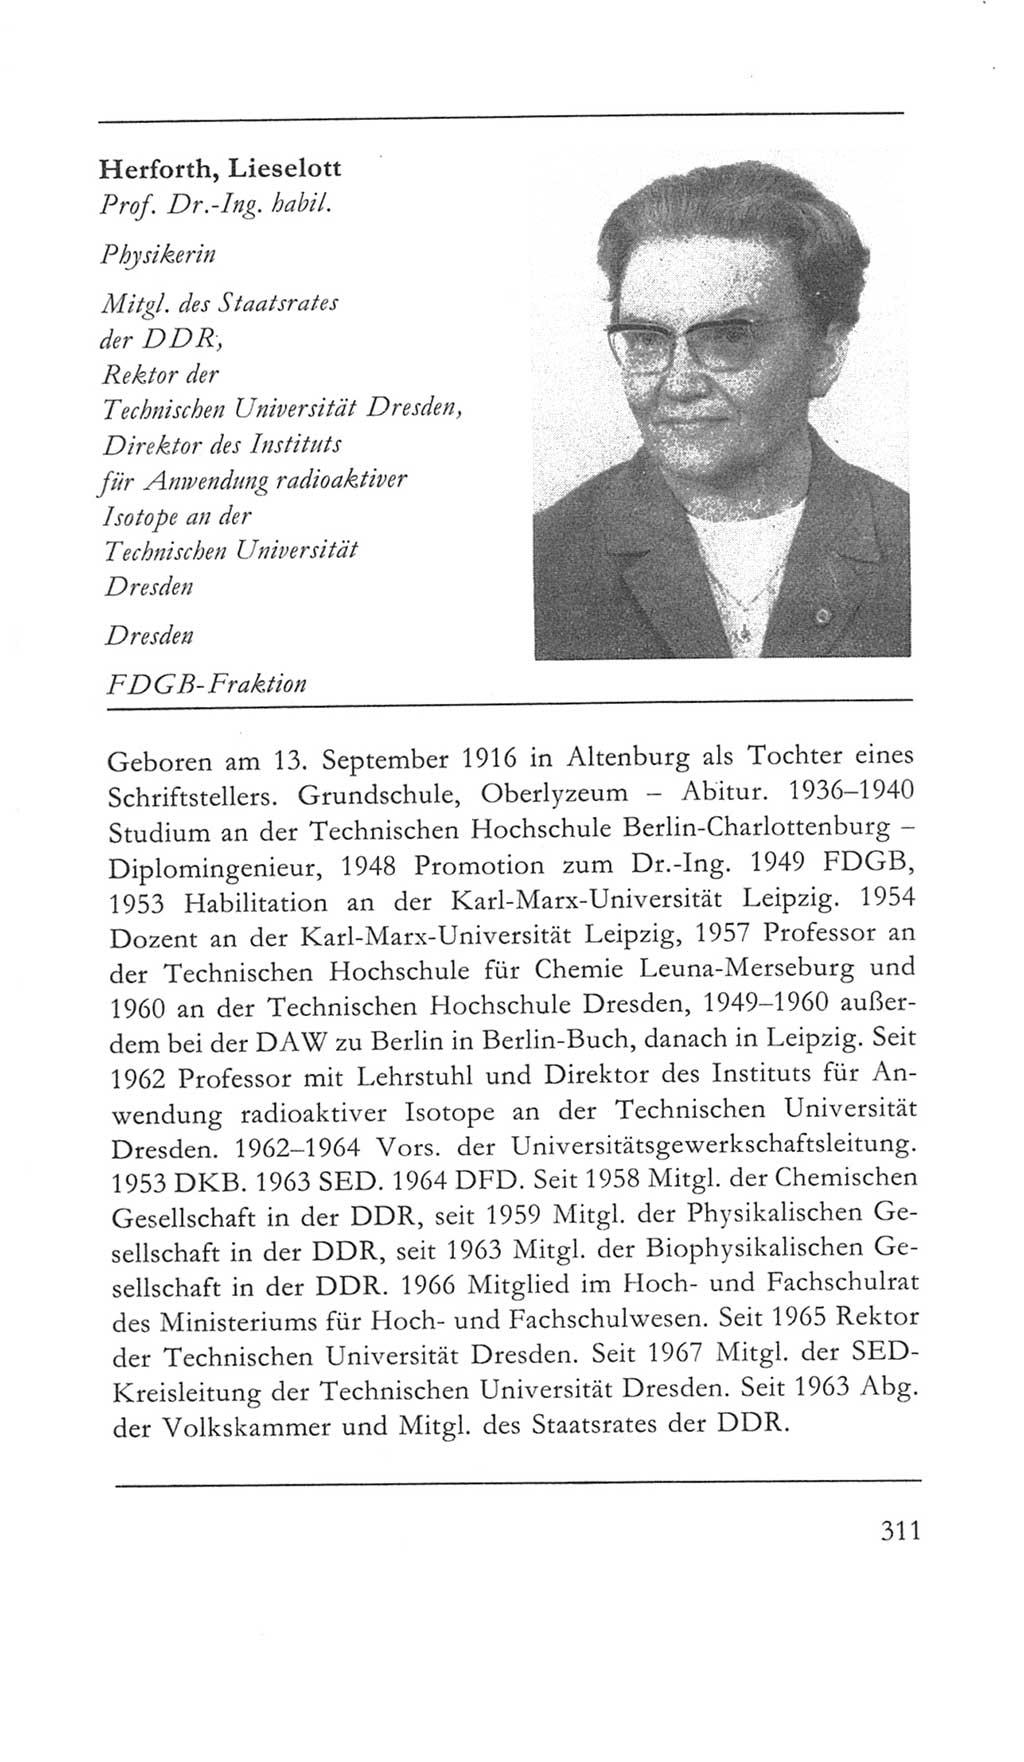 Volkskammer (VK) der Deutschen Demokratischen Republik (DDR) 5. Wahlperiode 1967-1971, Seite 311 (VK. DDR 5. WP. 1967-1971, S. 311)